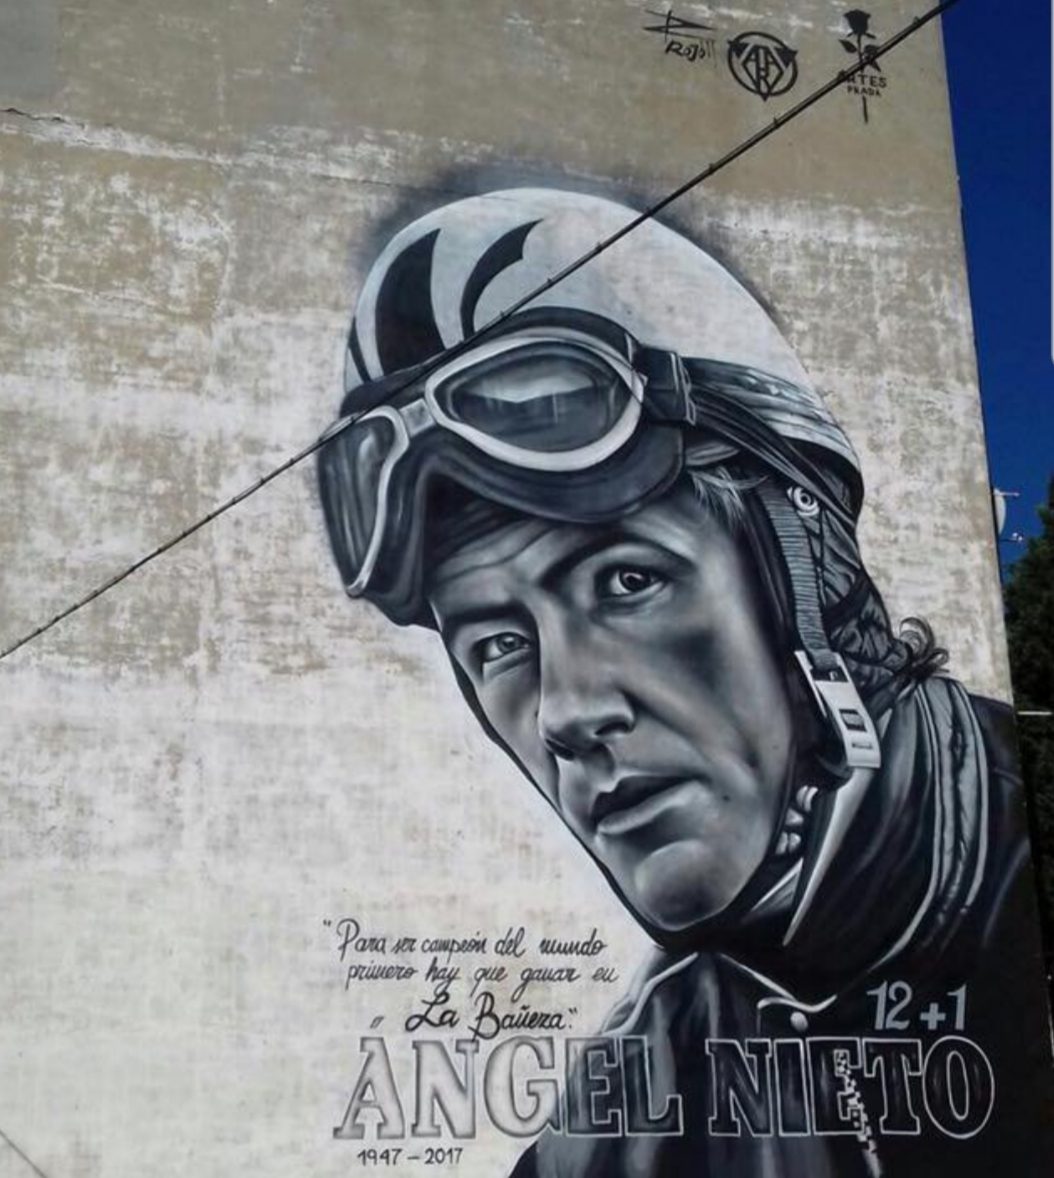 Graffiti de Ángel Nieto en la Bañeza, obra de Toño Prada y Jorge Gordillo (el rojo)